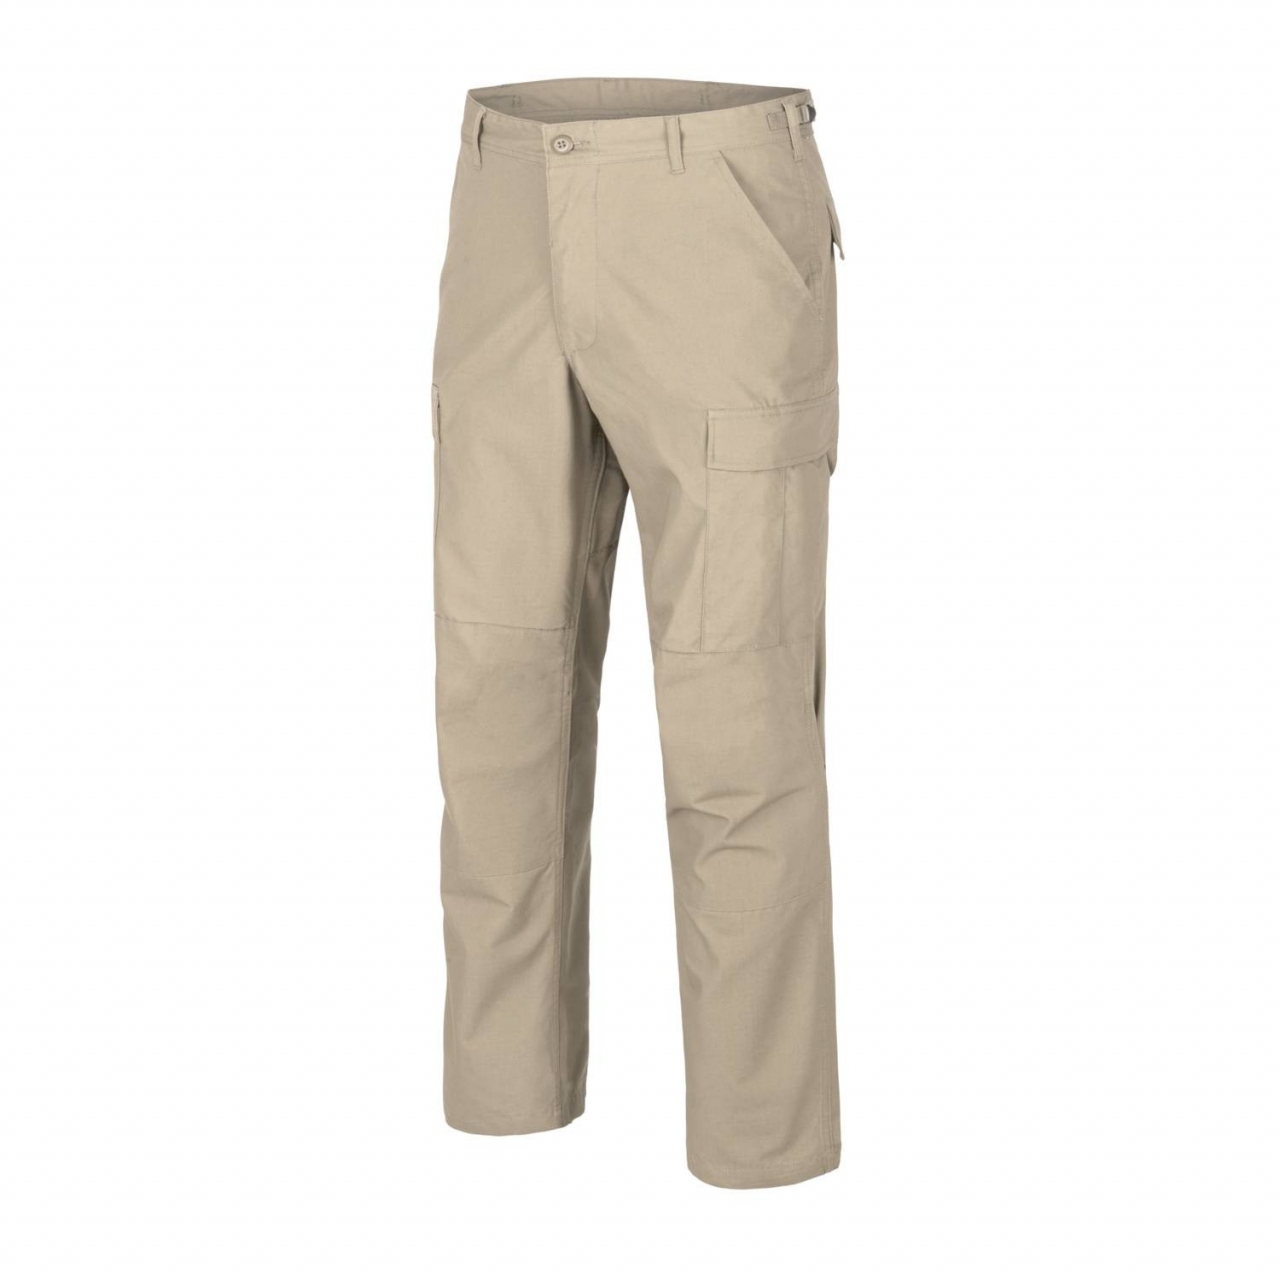 Kalhoty Helikon BDU Pants Ripstop - béžové, L